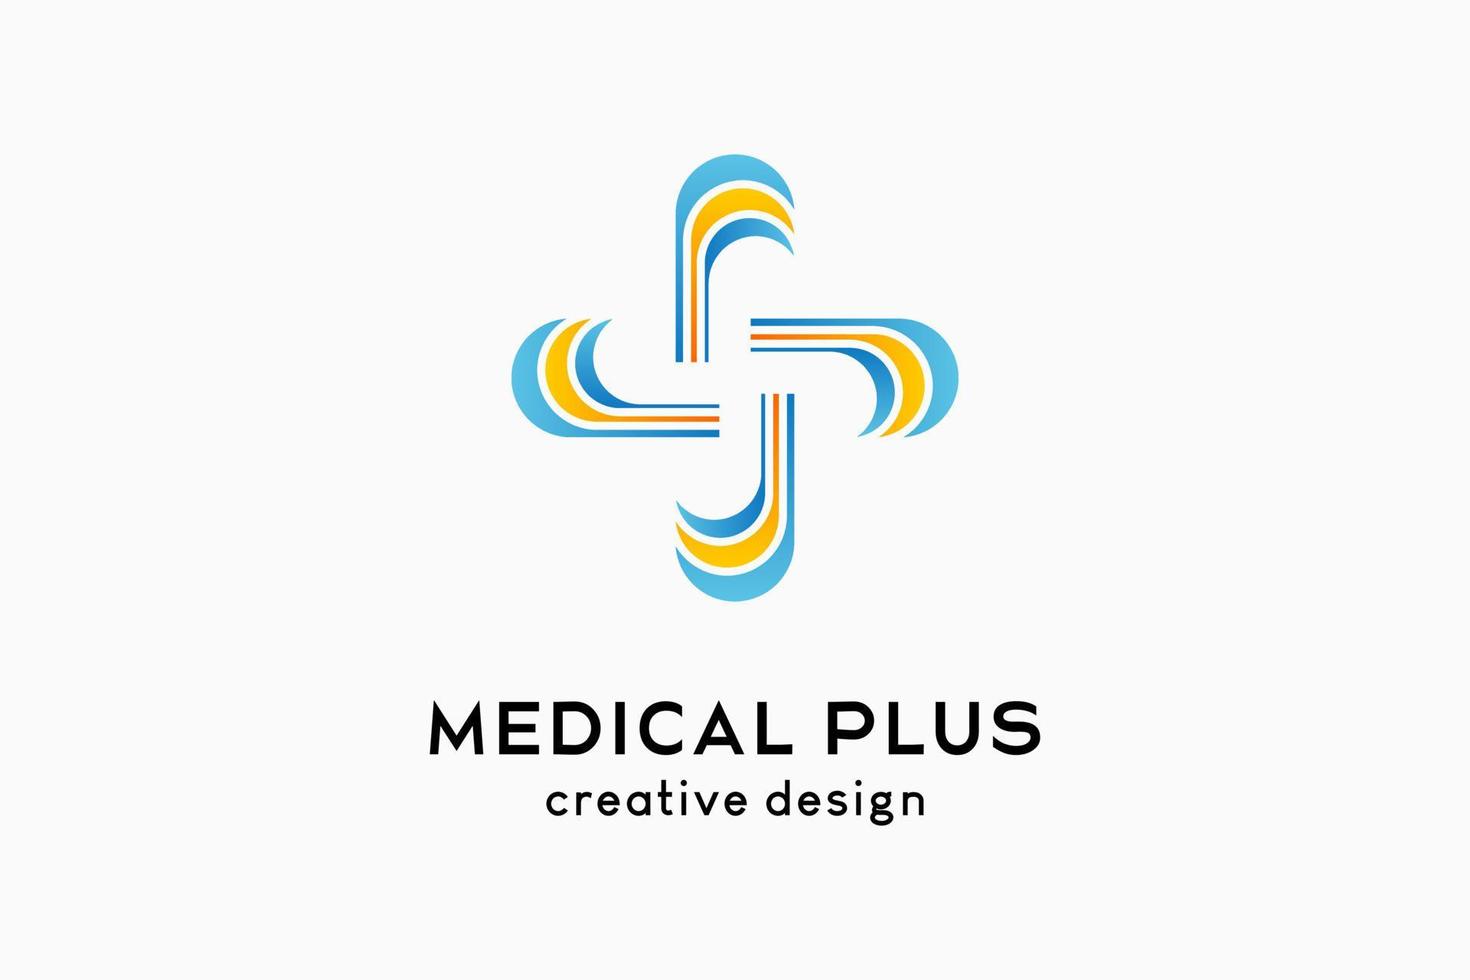 diseño de logotipo medical plus con concepto creativo vector